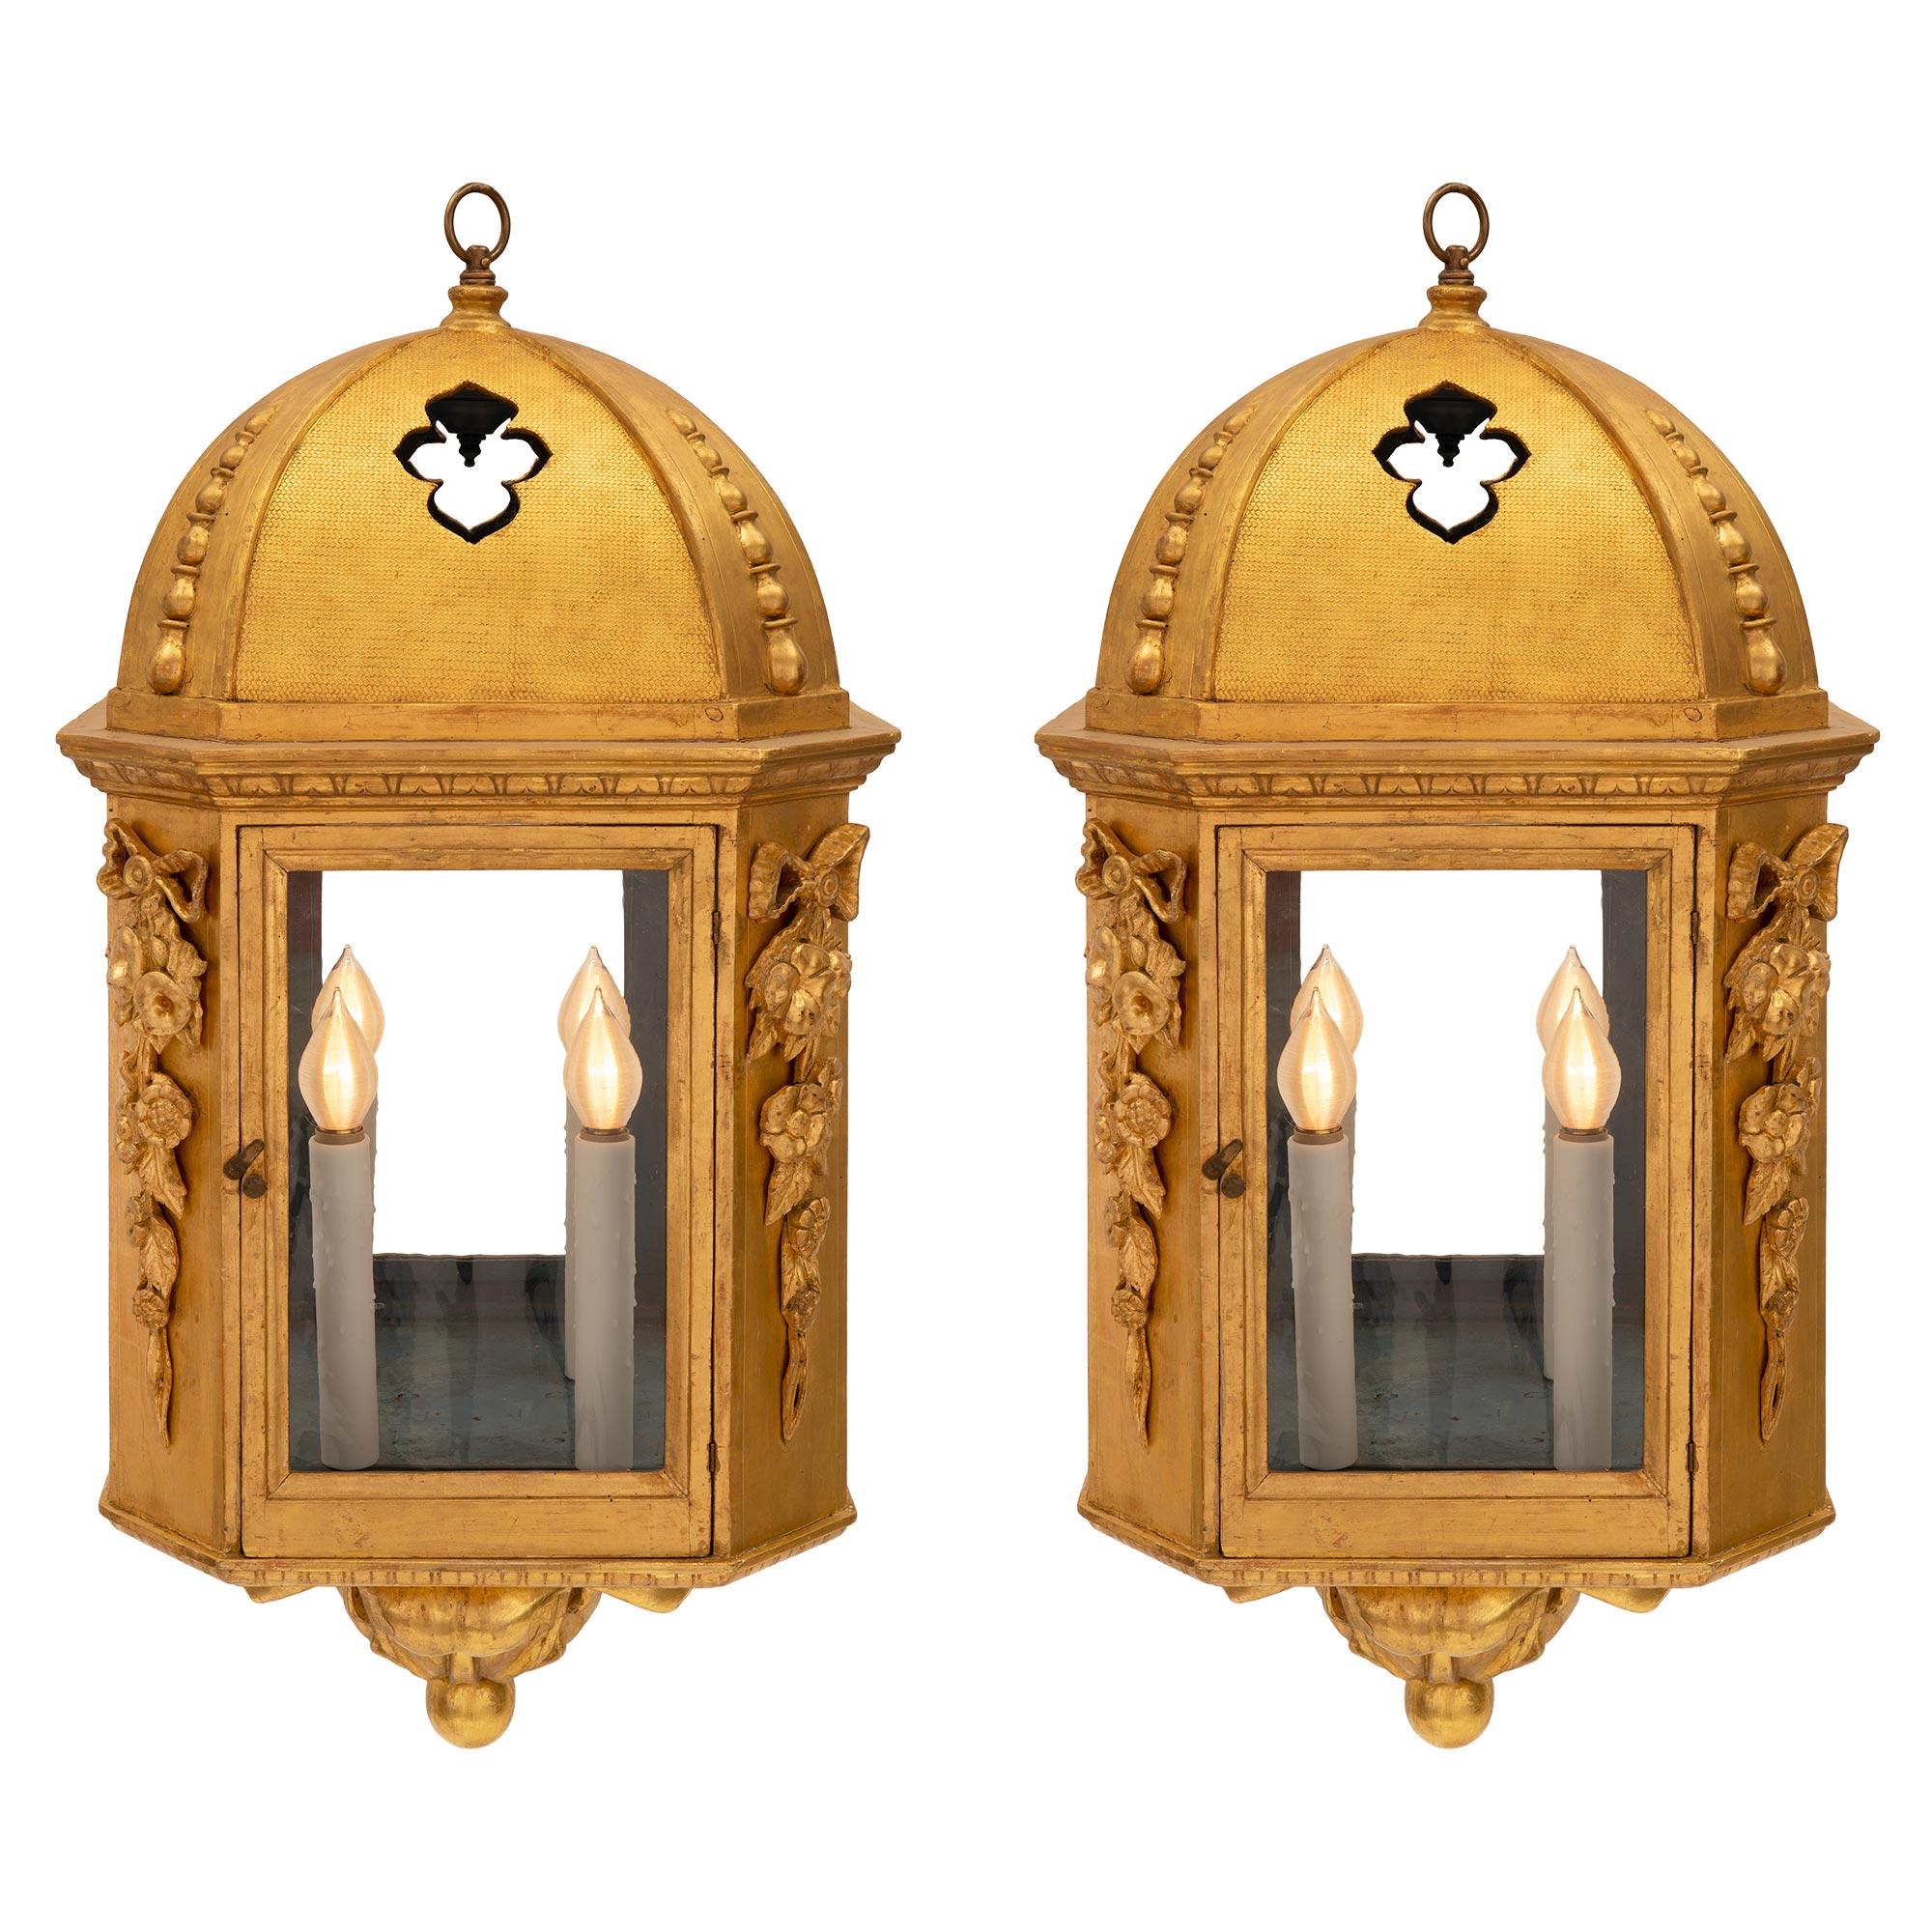 Paire de lanternes baroques italiennes en bois doré du 18ème siècle